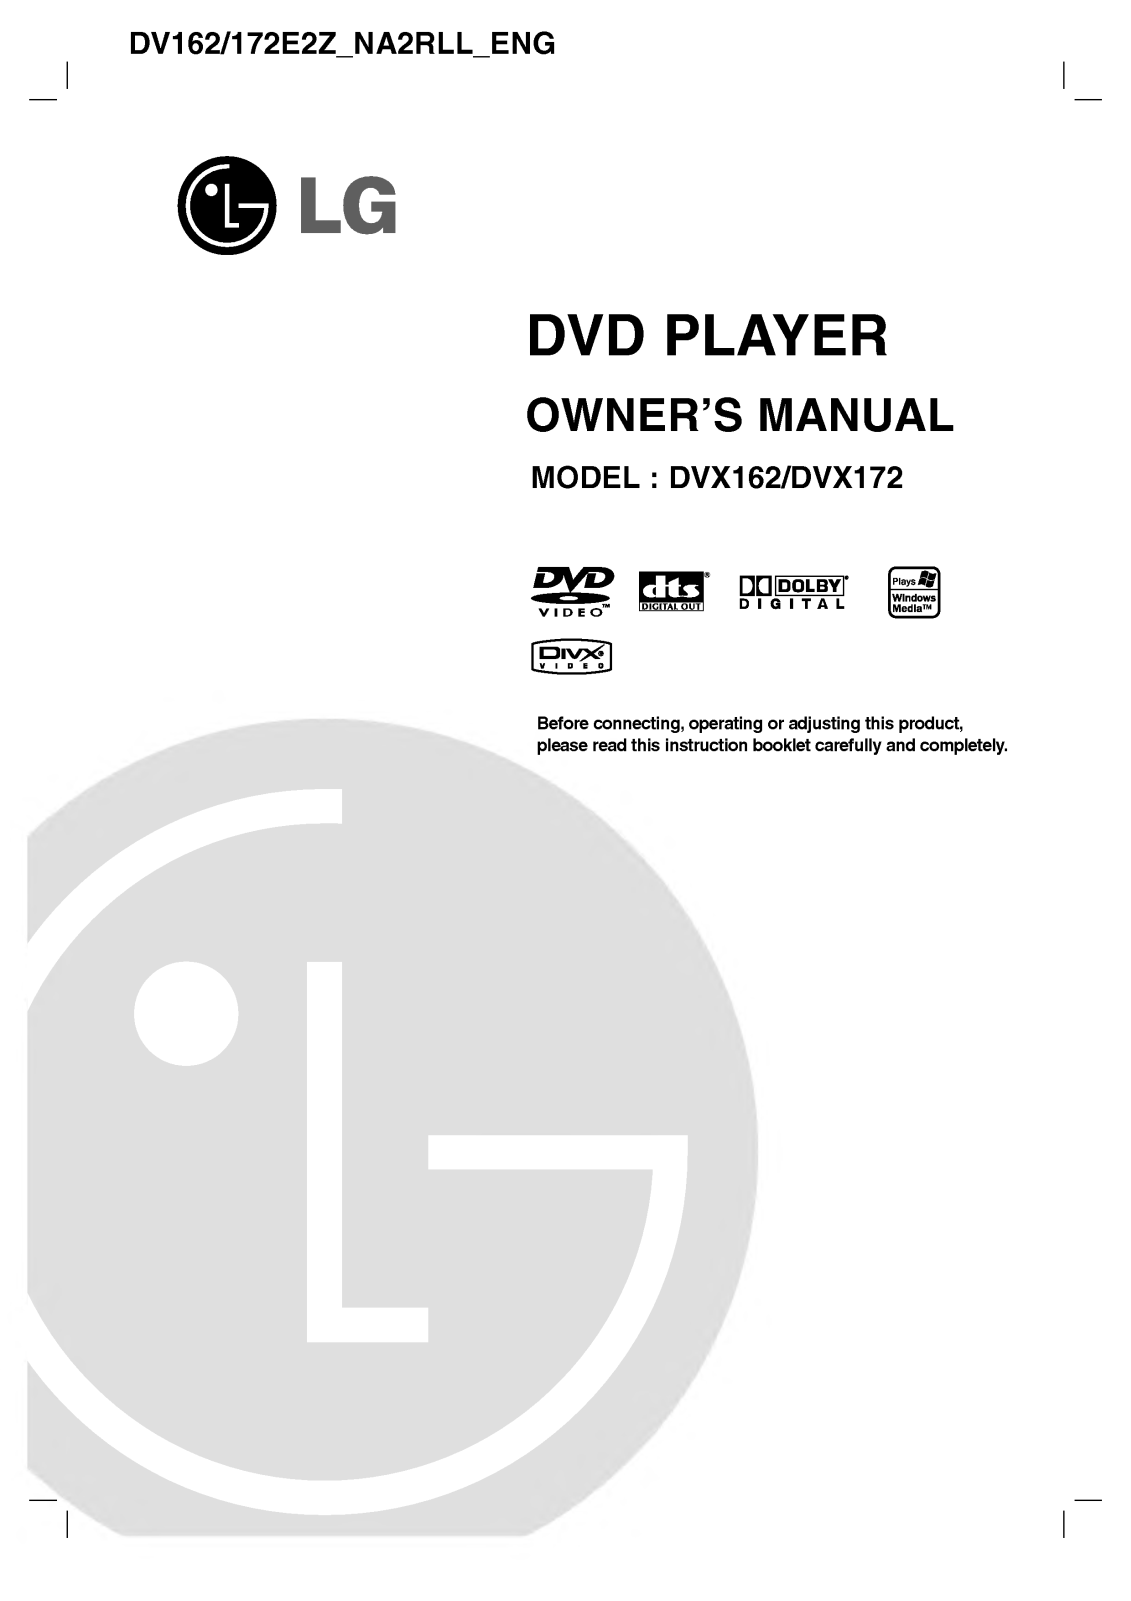 Lg DVX172, DVX162 Owners Manual